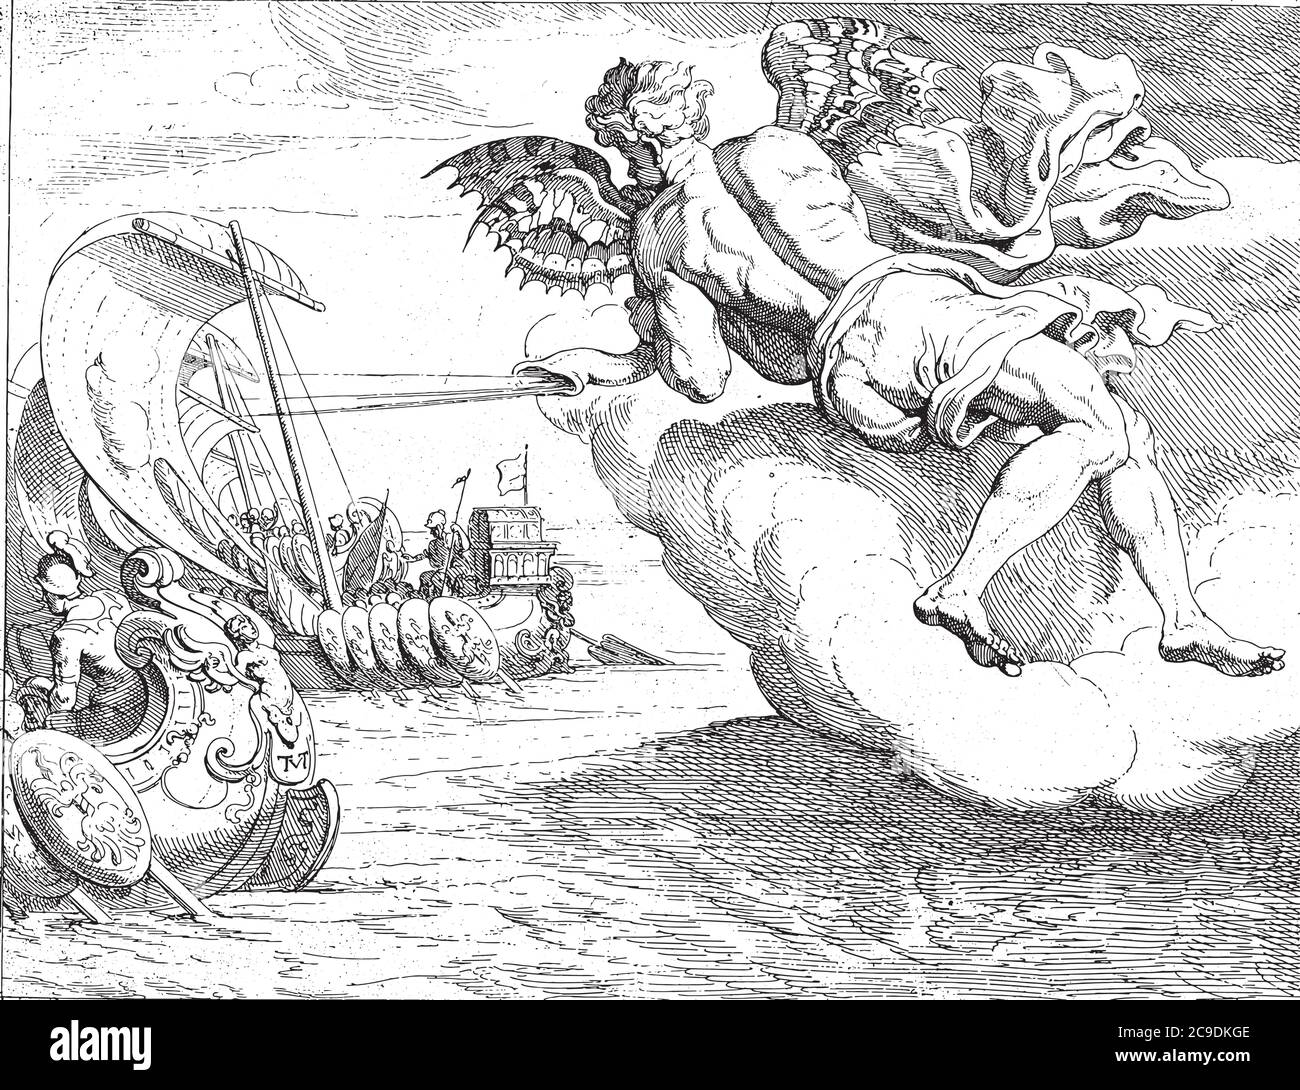 Zephyrus souffle Odysseus 'la hanche en avant, Theporte van Thulden, après Francesco Primaticcio, après Nicolo dell Abate, Zephyrus, dieu du vent de l'ouest, Blo Illustration de Vecteur